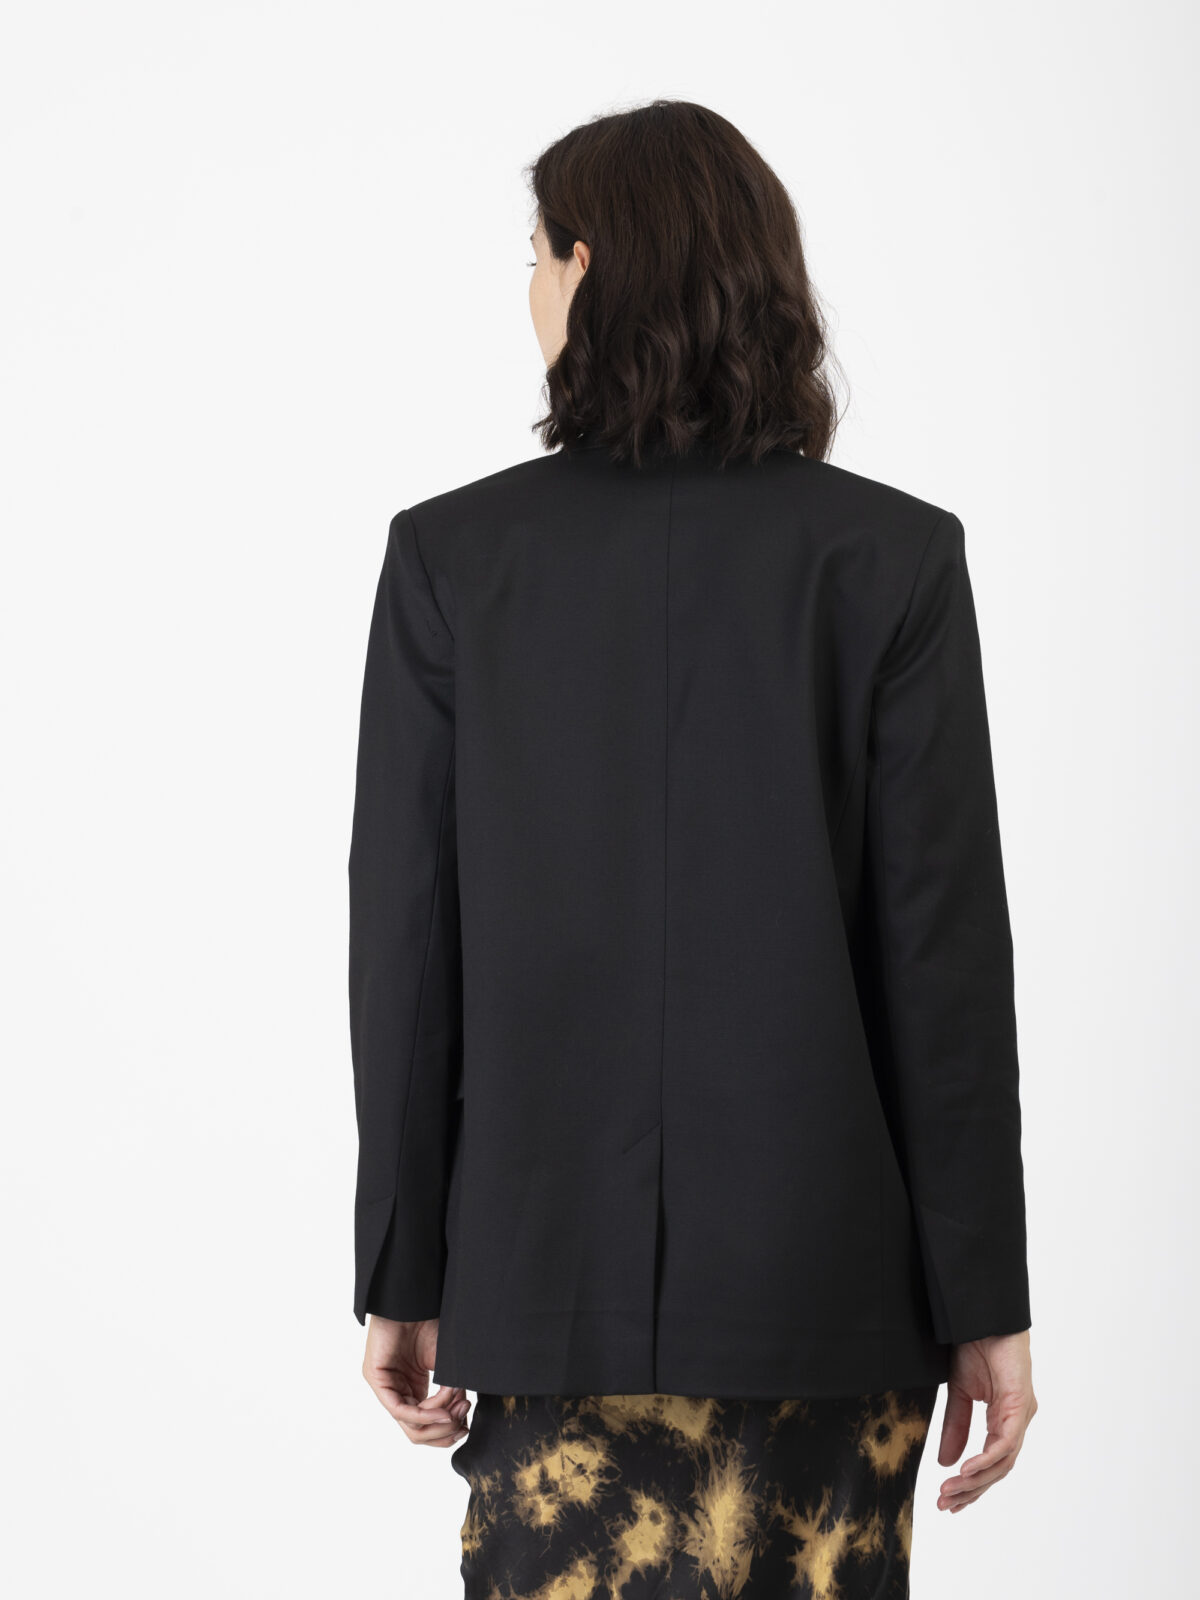 vainquer-classic-suit-jacket-black-lapetitefrancaise-matchboxathens